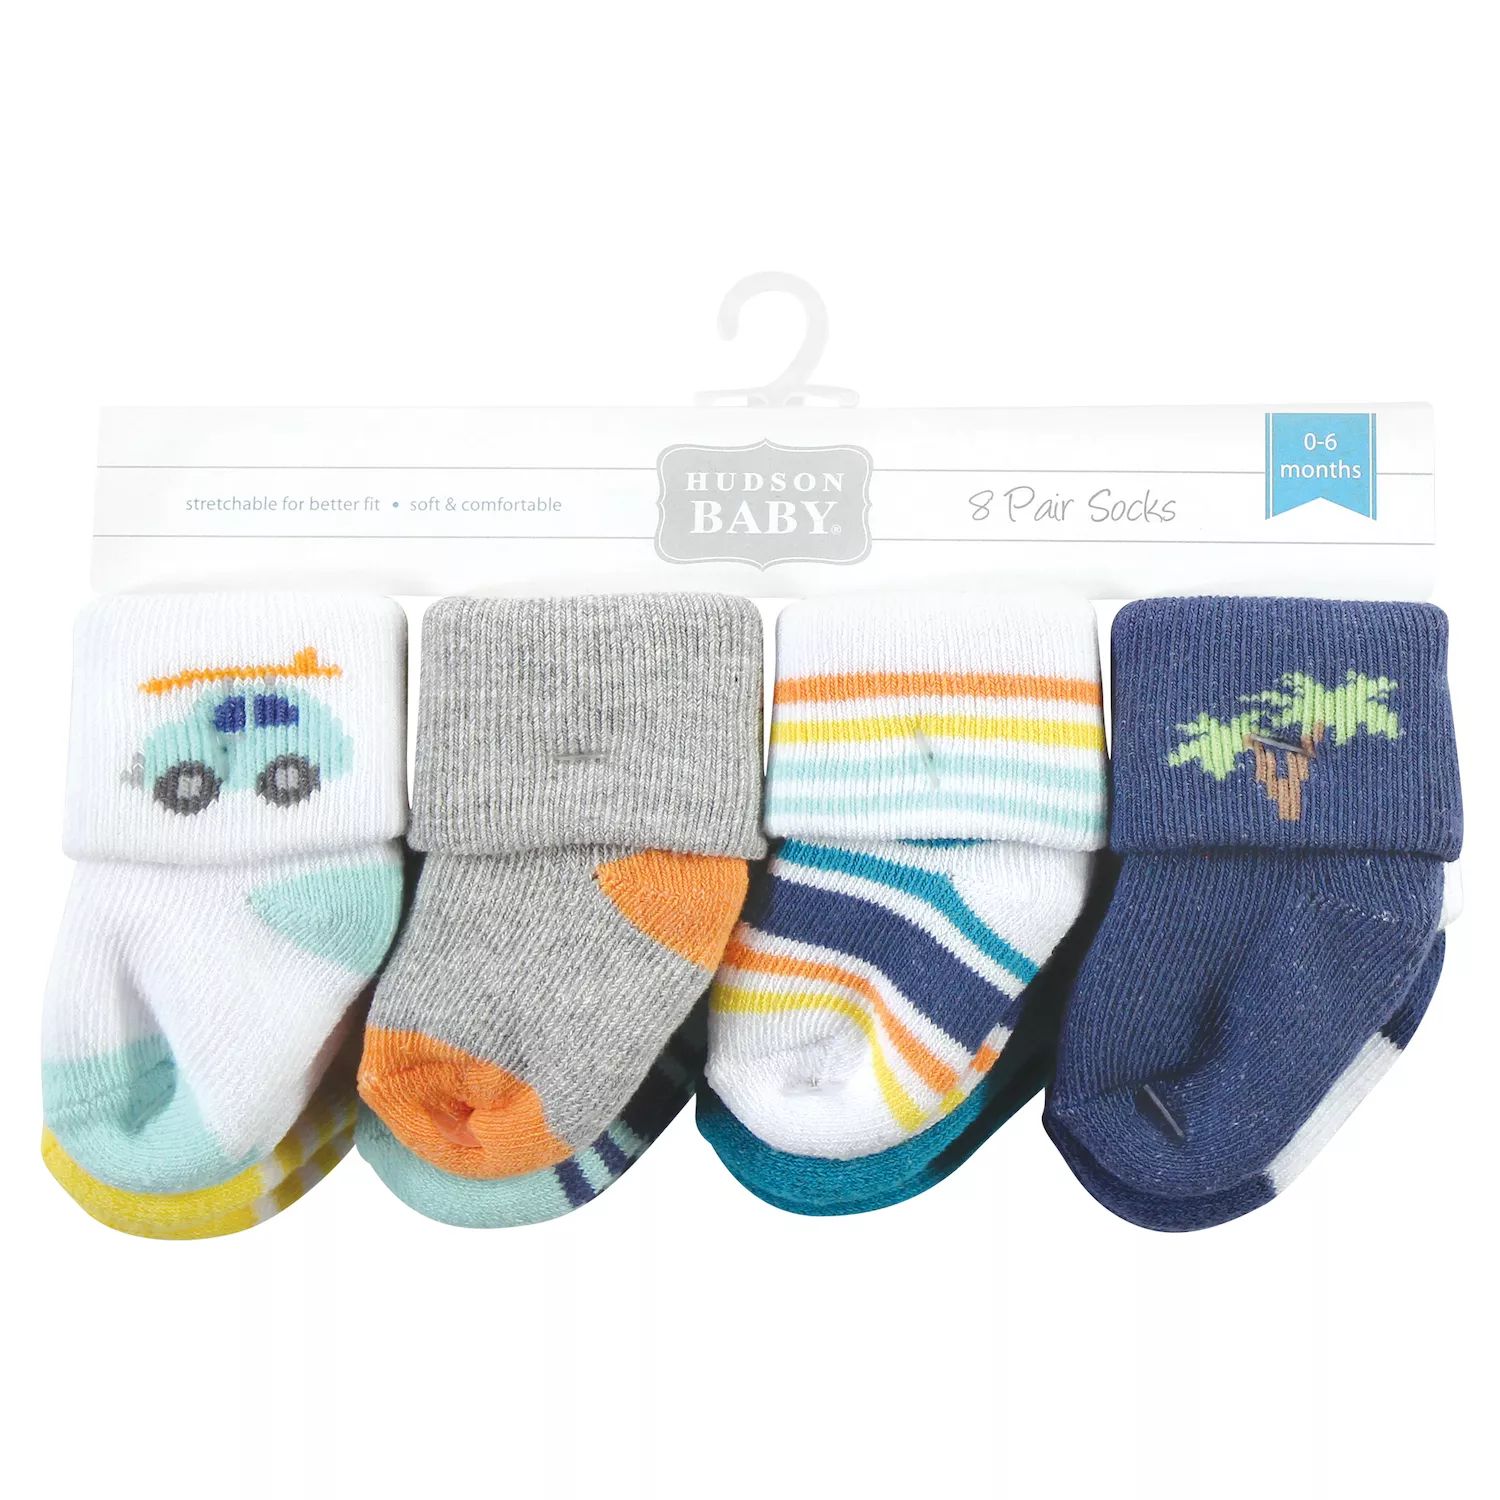 Хлопковые носки Hudson для новорожденных мальчиков и махровые носки, Surf Dude Hudson Baby